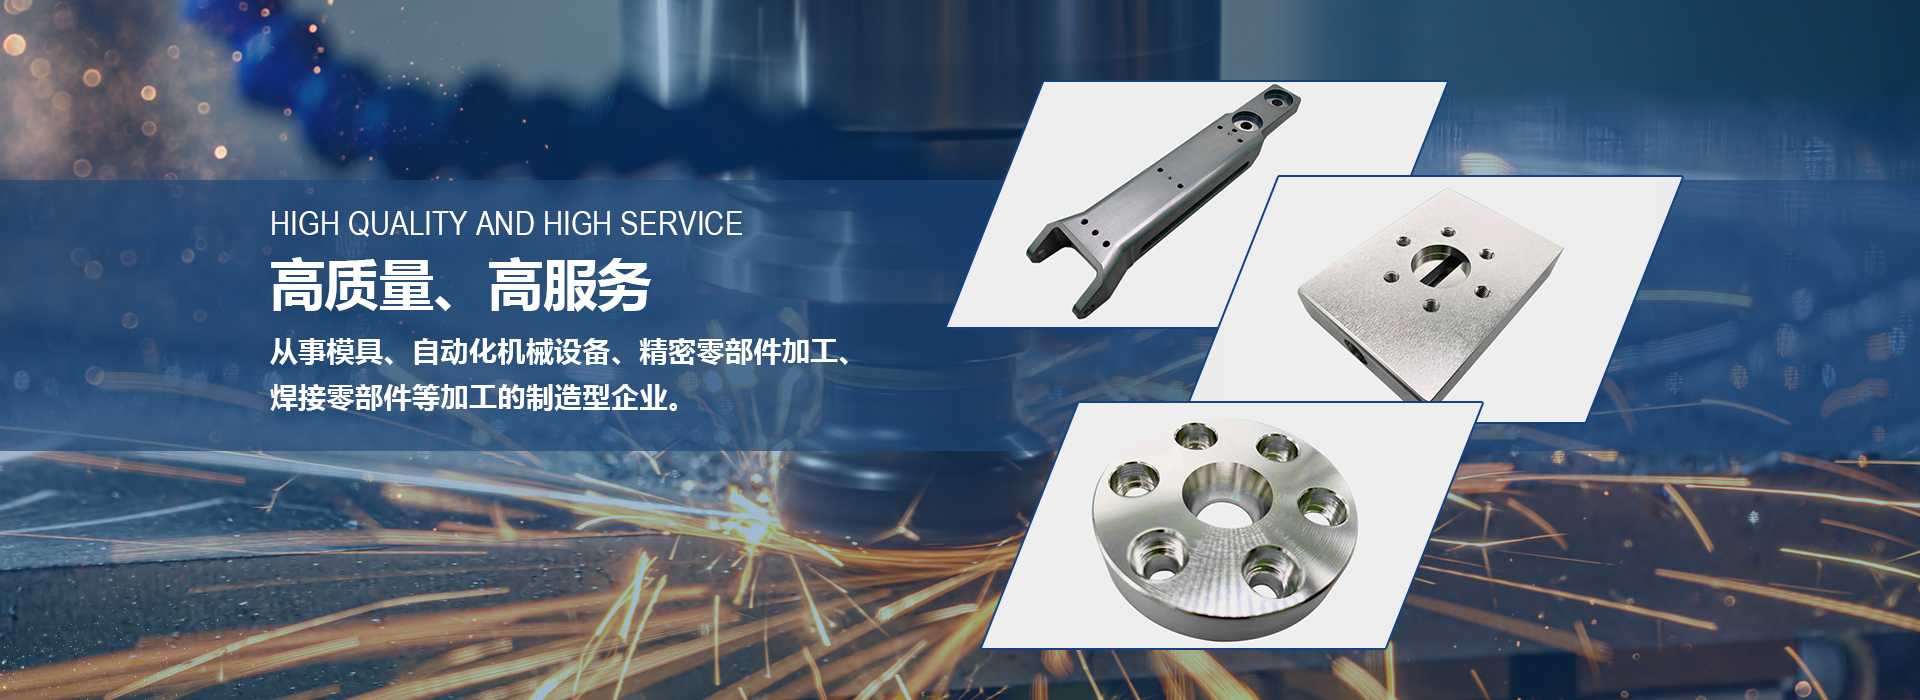 青森公司主營日本零部件、焊接零部件、非標零部件 組裝設備零部件、精密零部件等。